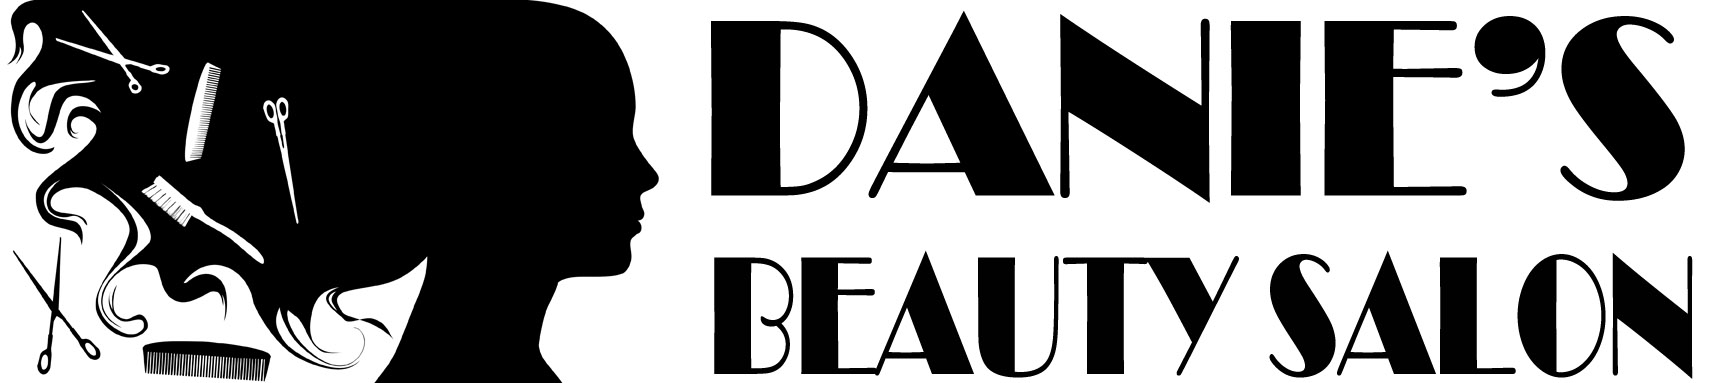 Danies Beauty Salon